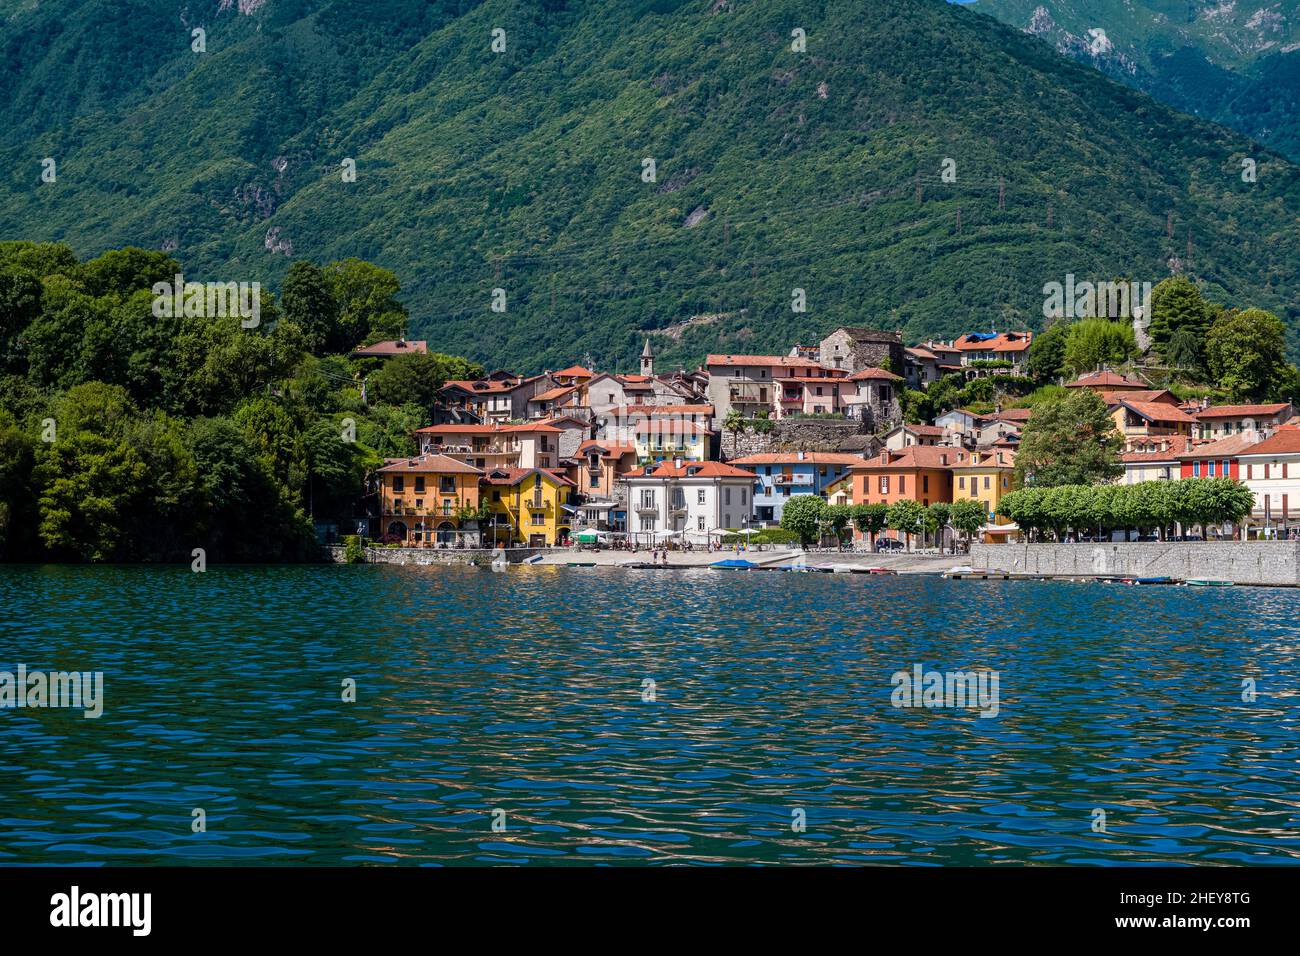 View of Morgozzo across the lake Lago di Mergozzo, close to Lake Maggiore. Stock Photo